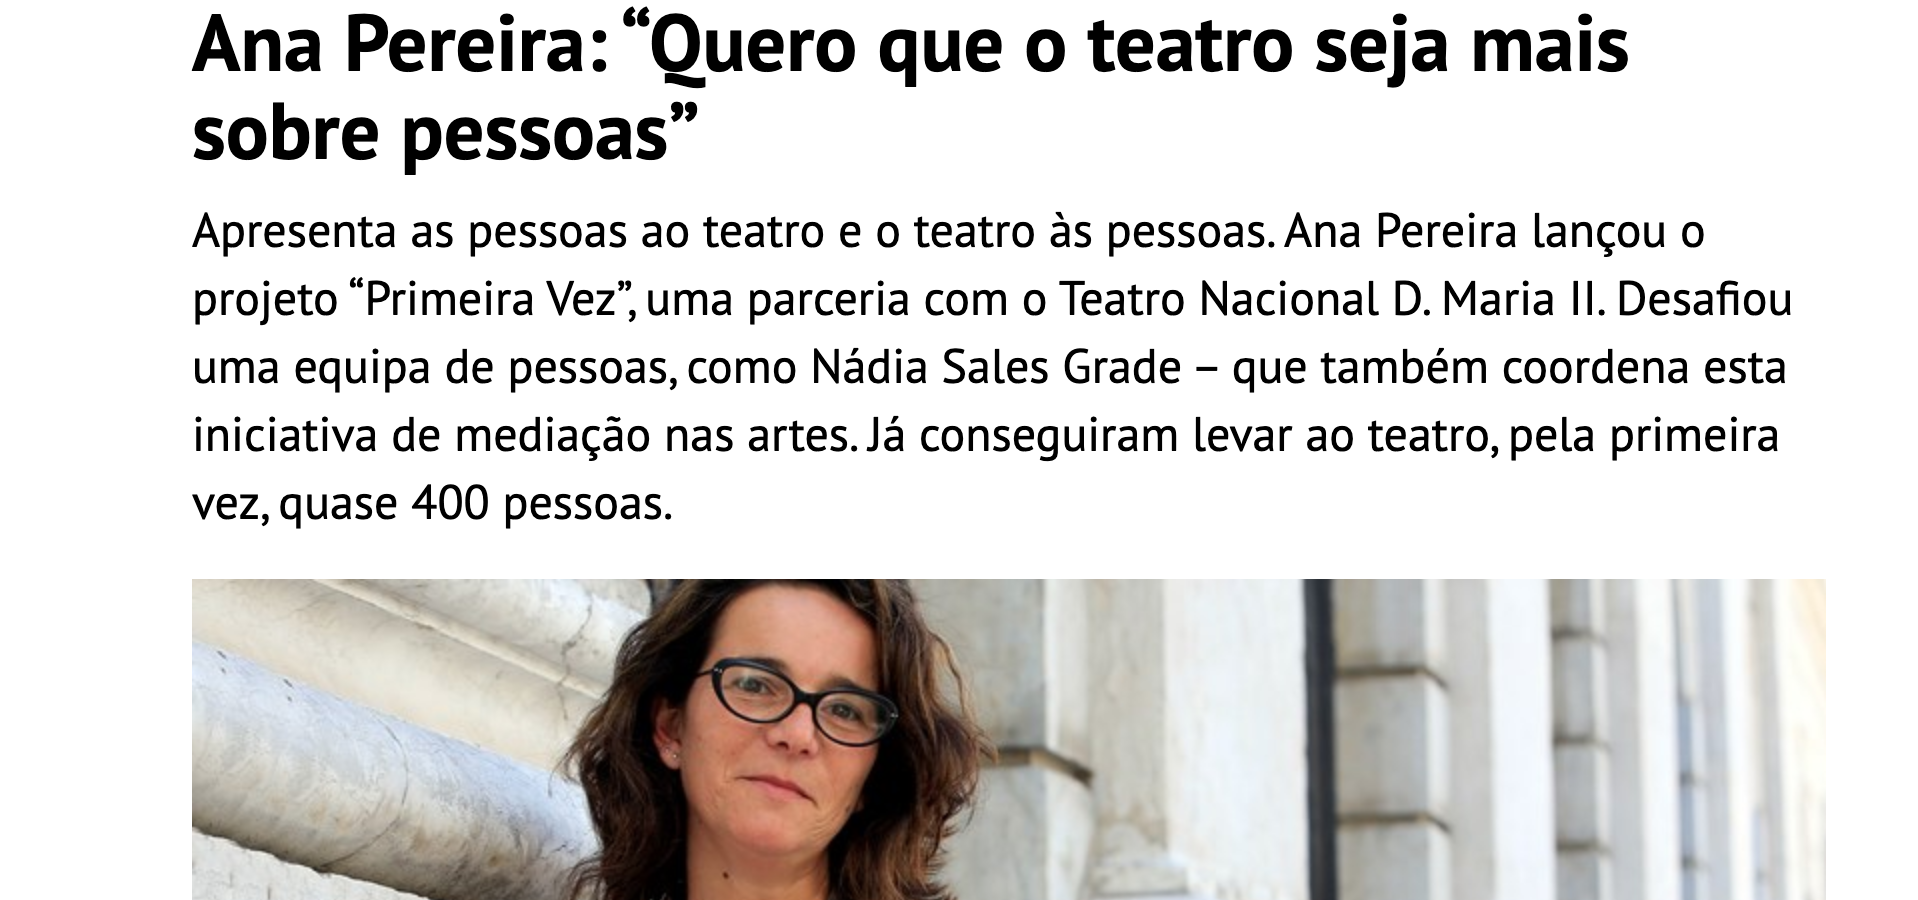 Jornal de Negócios - Entrevista de Lúcia Crespo a Ana Pereira